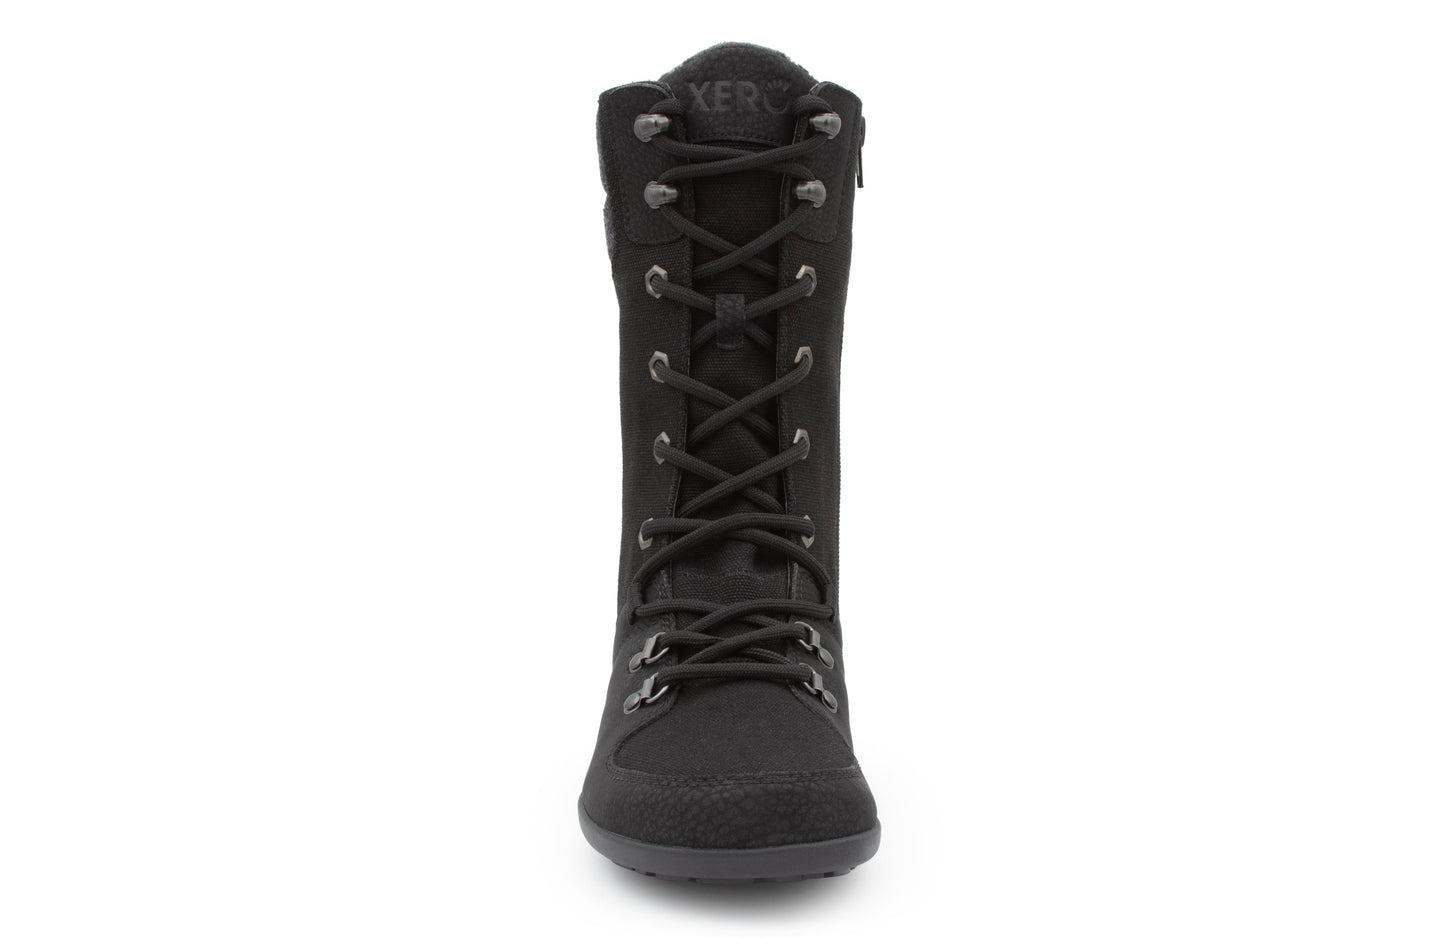 Xero Shoes Mika barfods vinterstøvler til kvinder i farven black, forfra